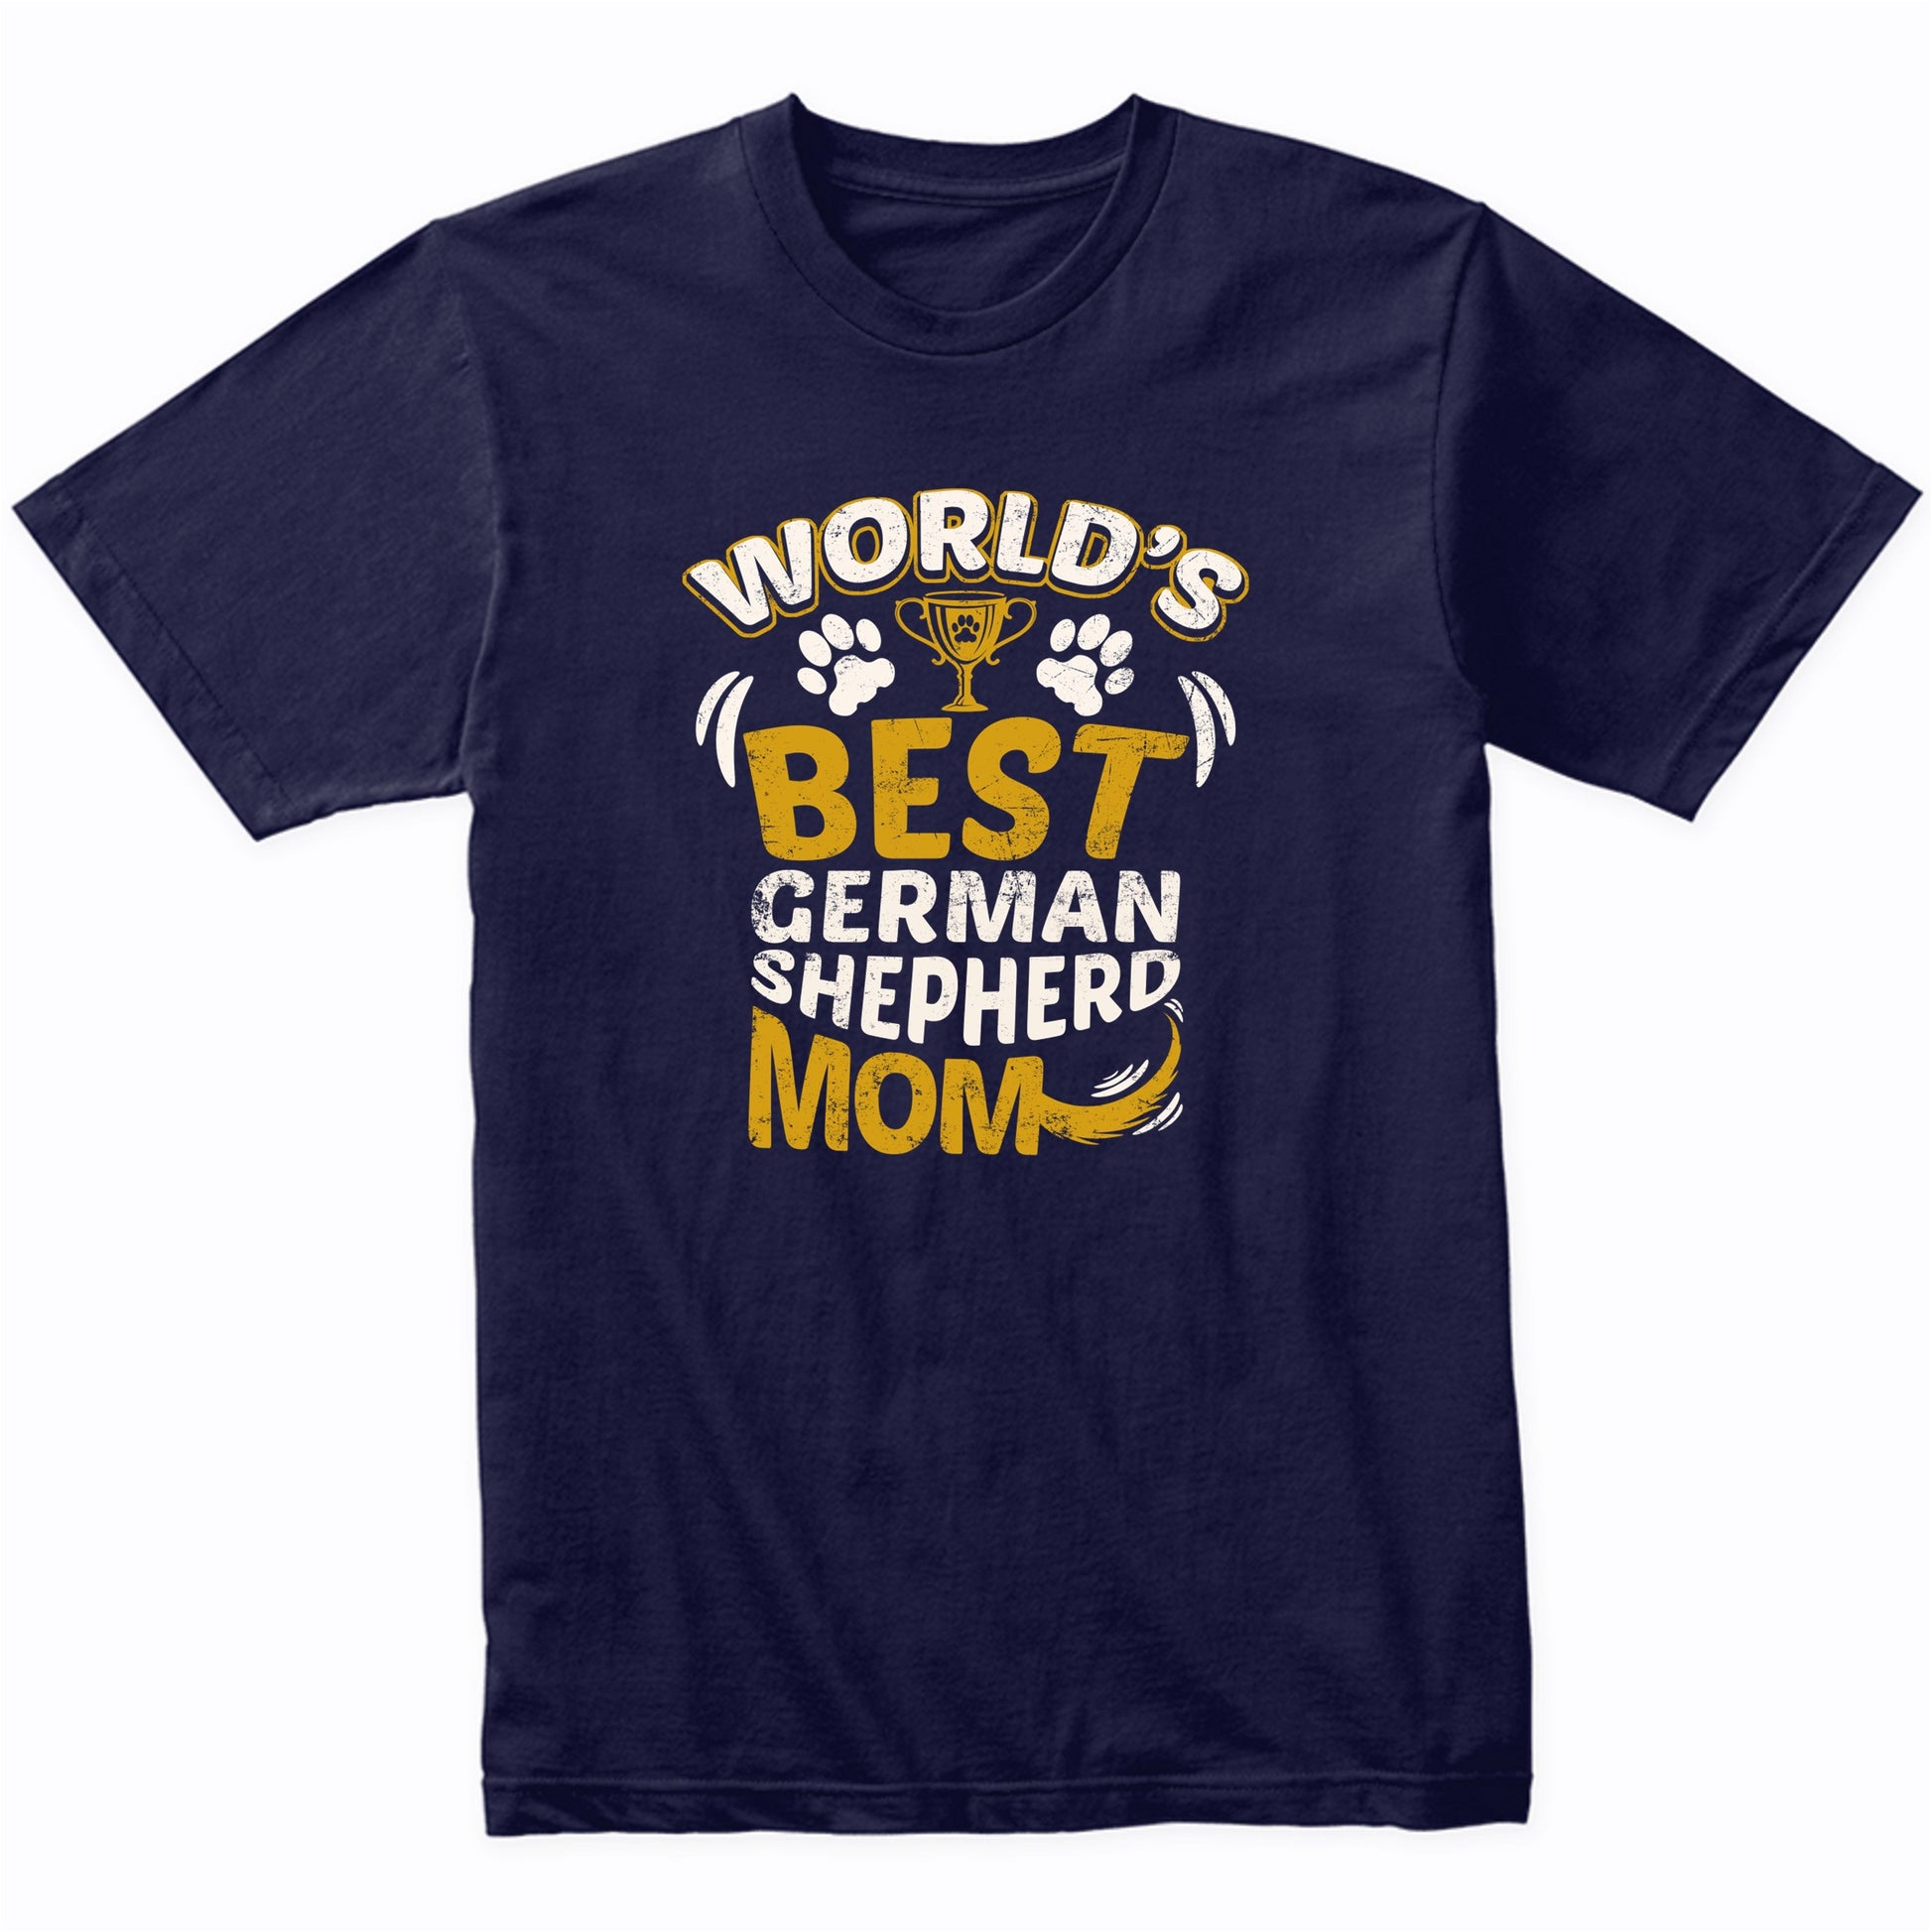 World's Best German Shepherd Mom Graphic T-Shirt